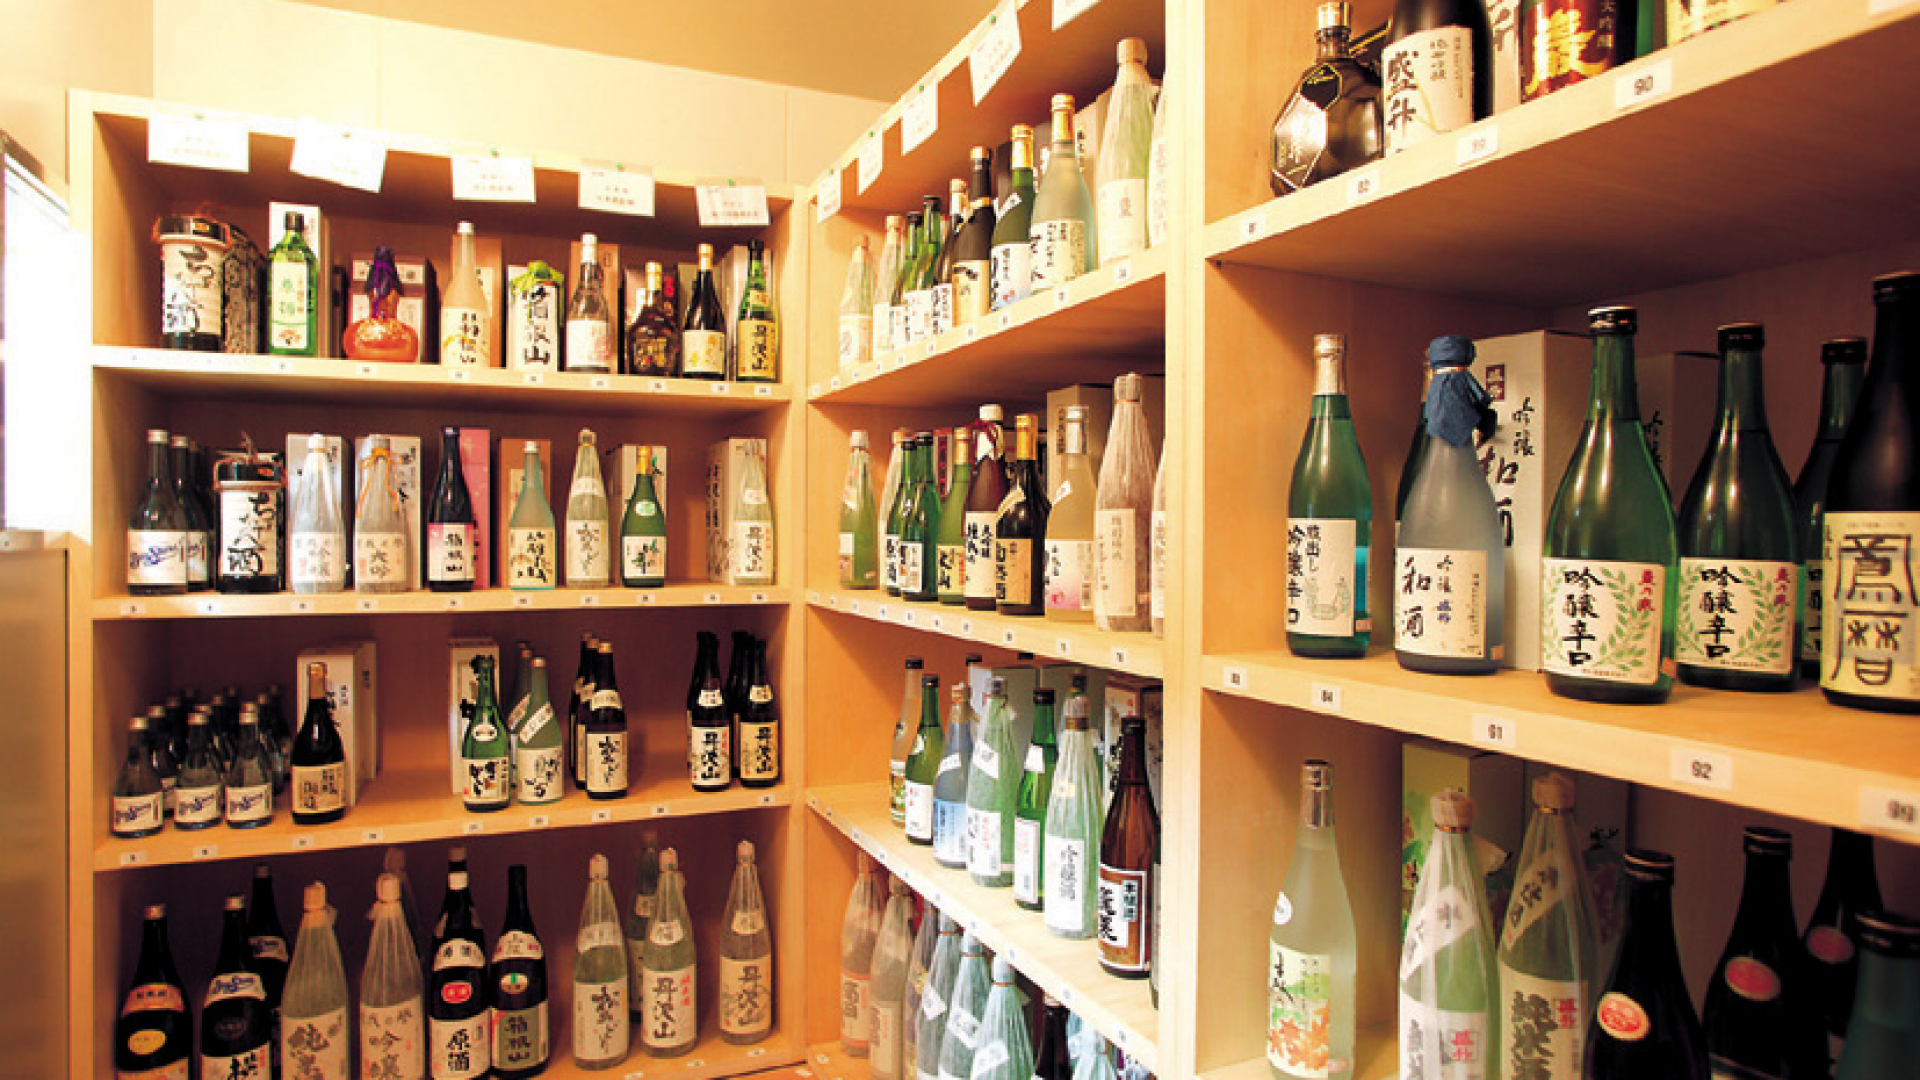 Kanagawa Sake brewing association